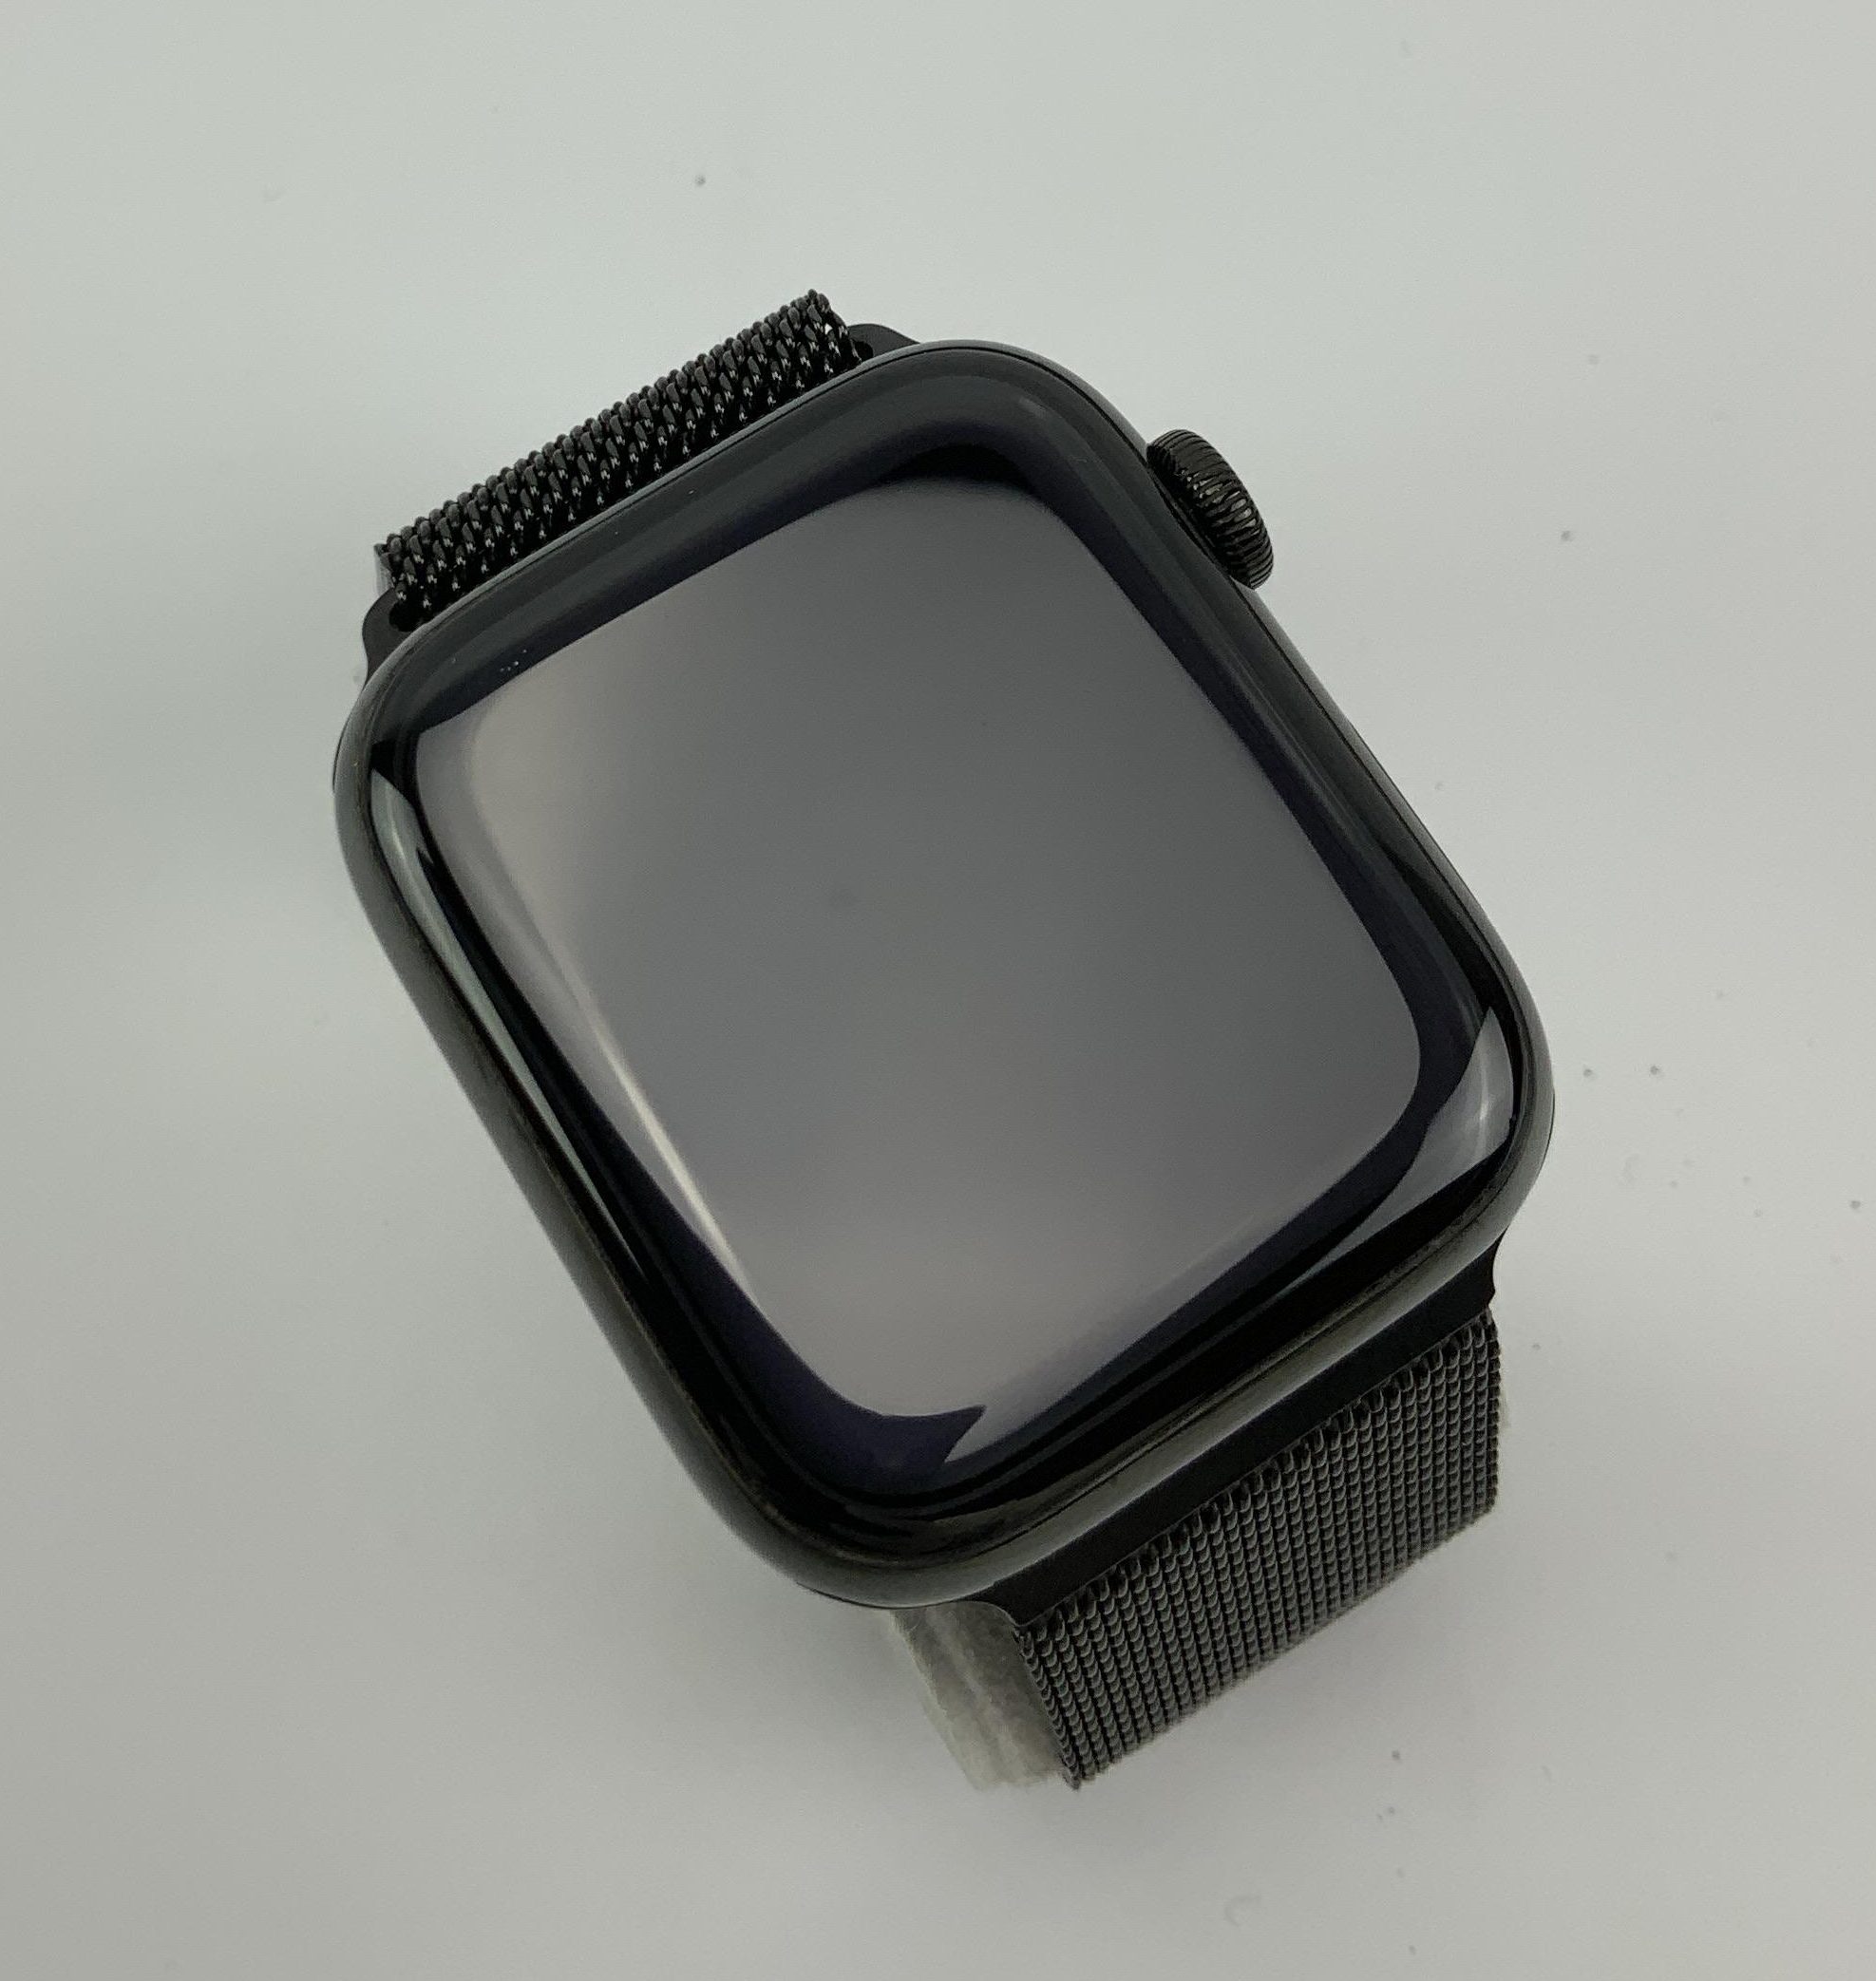 Watch Series 4 Steel Cellular (44mm), Space Black, Space Black Milanese Loop, imagen 3